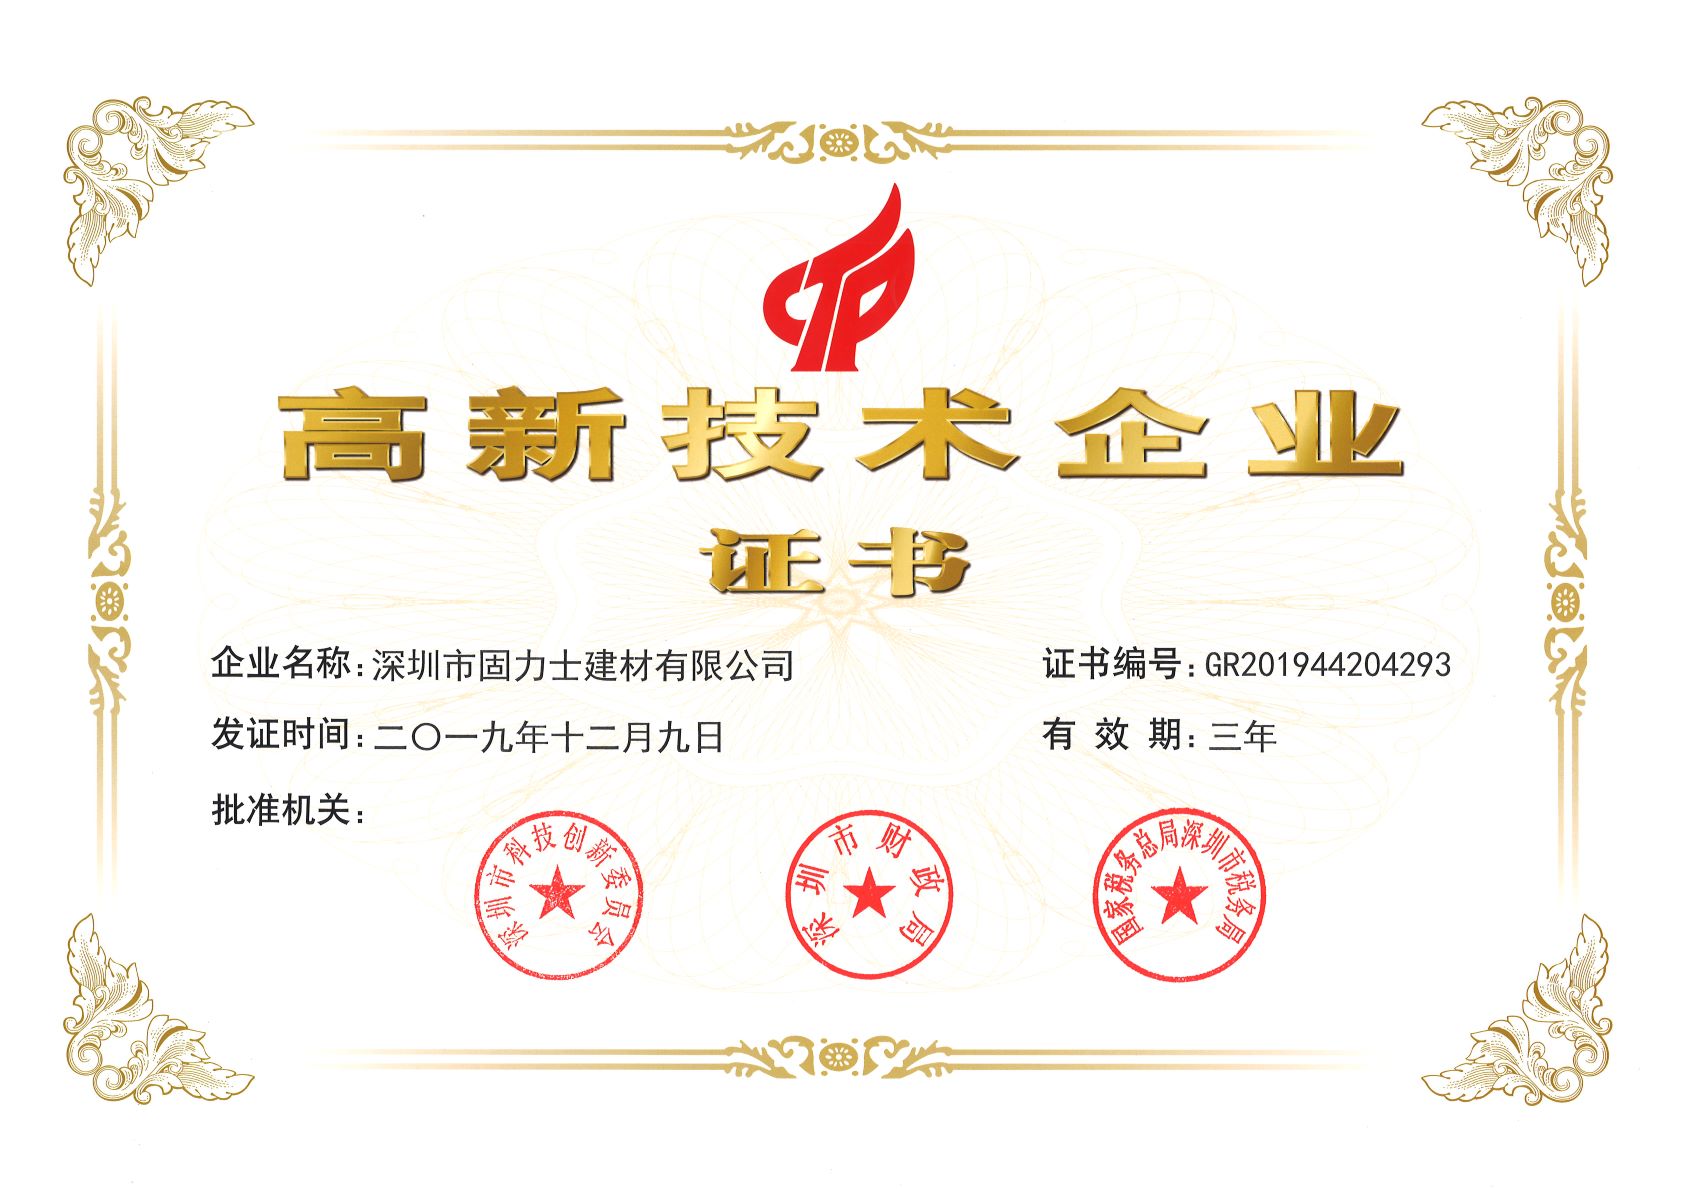 略阳热烈祝贺深圳市固力士建材有限公司通过高新技术企业认证